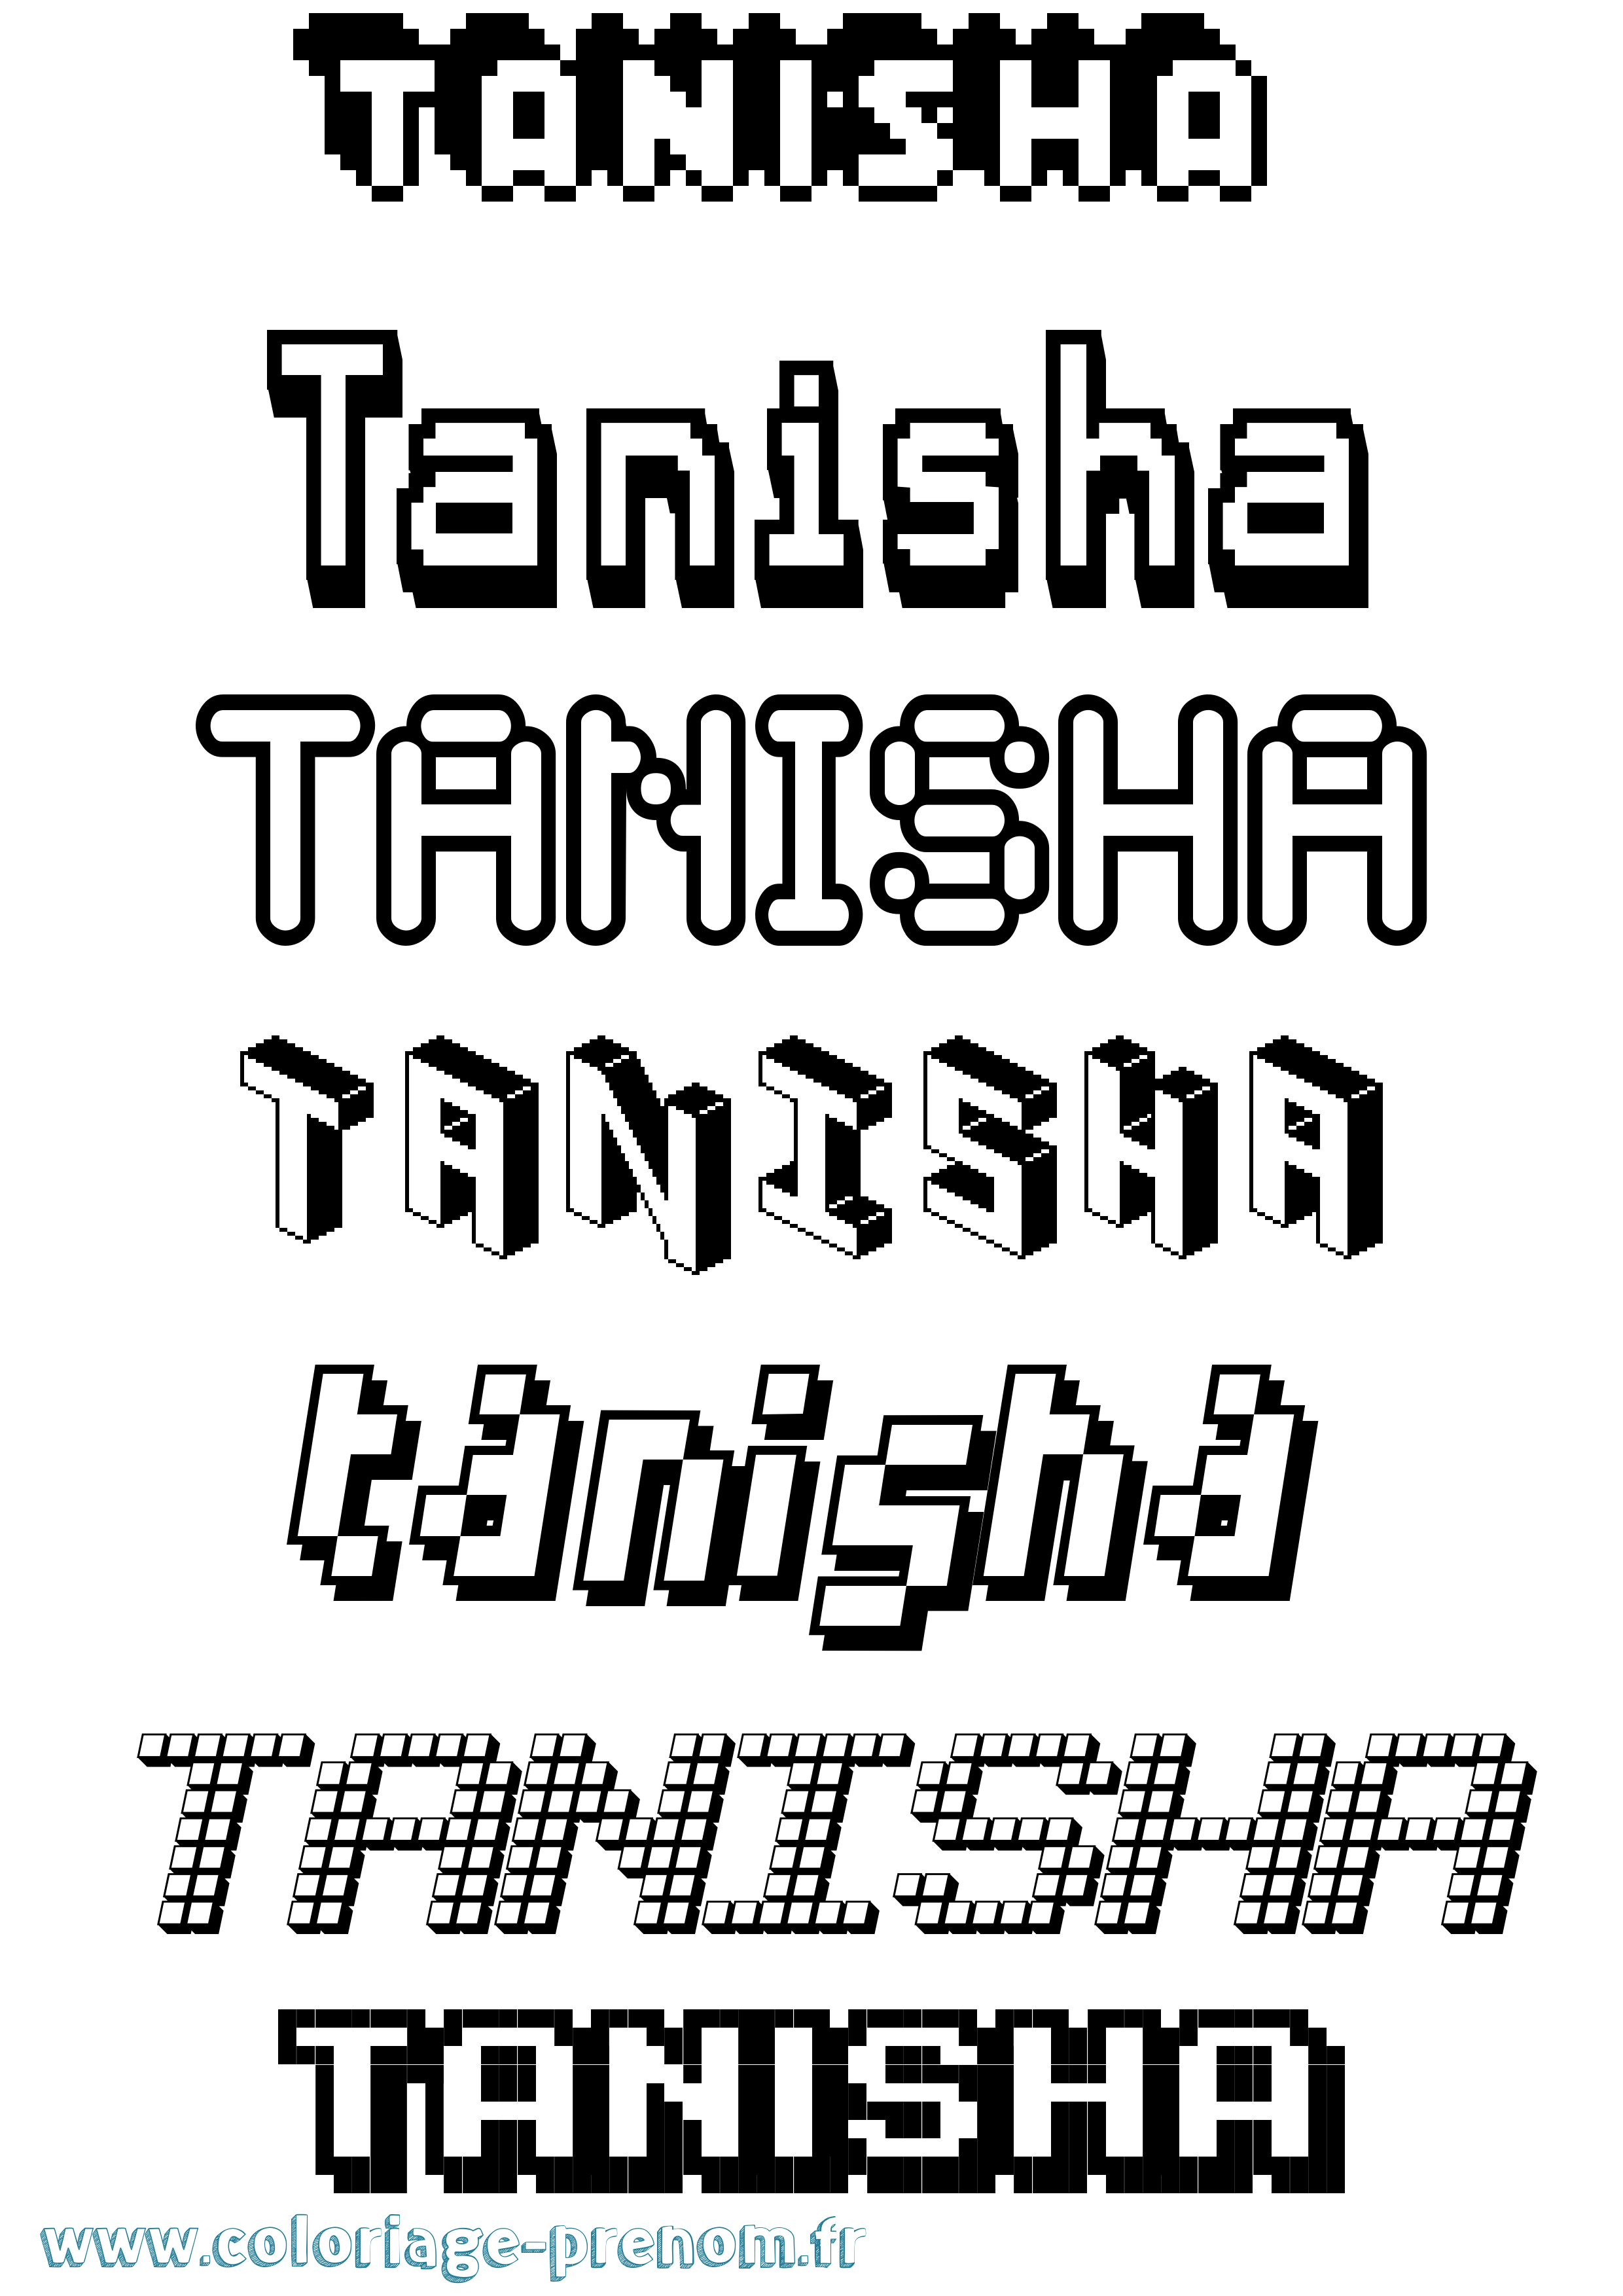 Coloriage prénom Tanisha Pixel